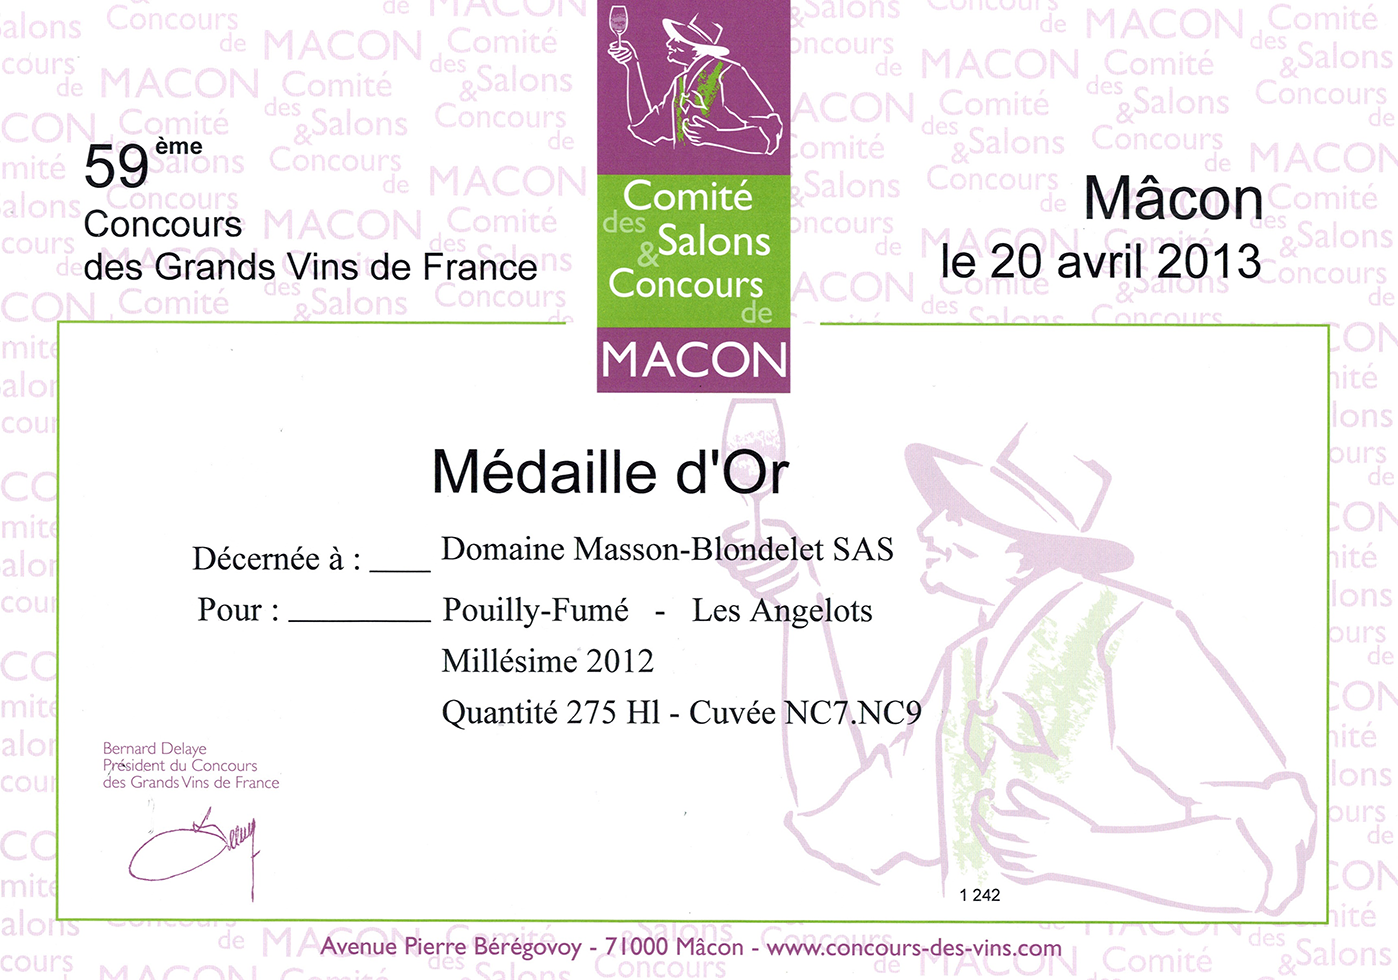 Domaine Masson-Blondelet - Concours des Grands Vins de France 2013 - Medaille d'or